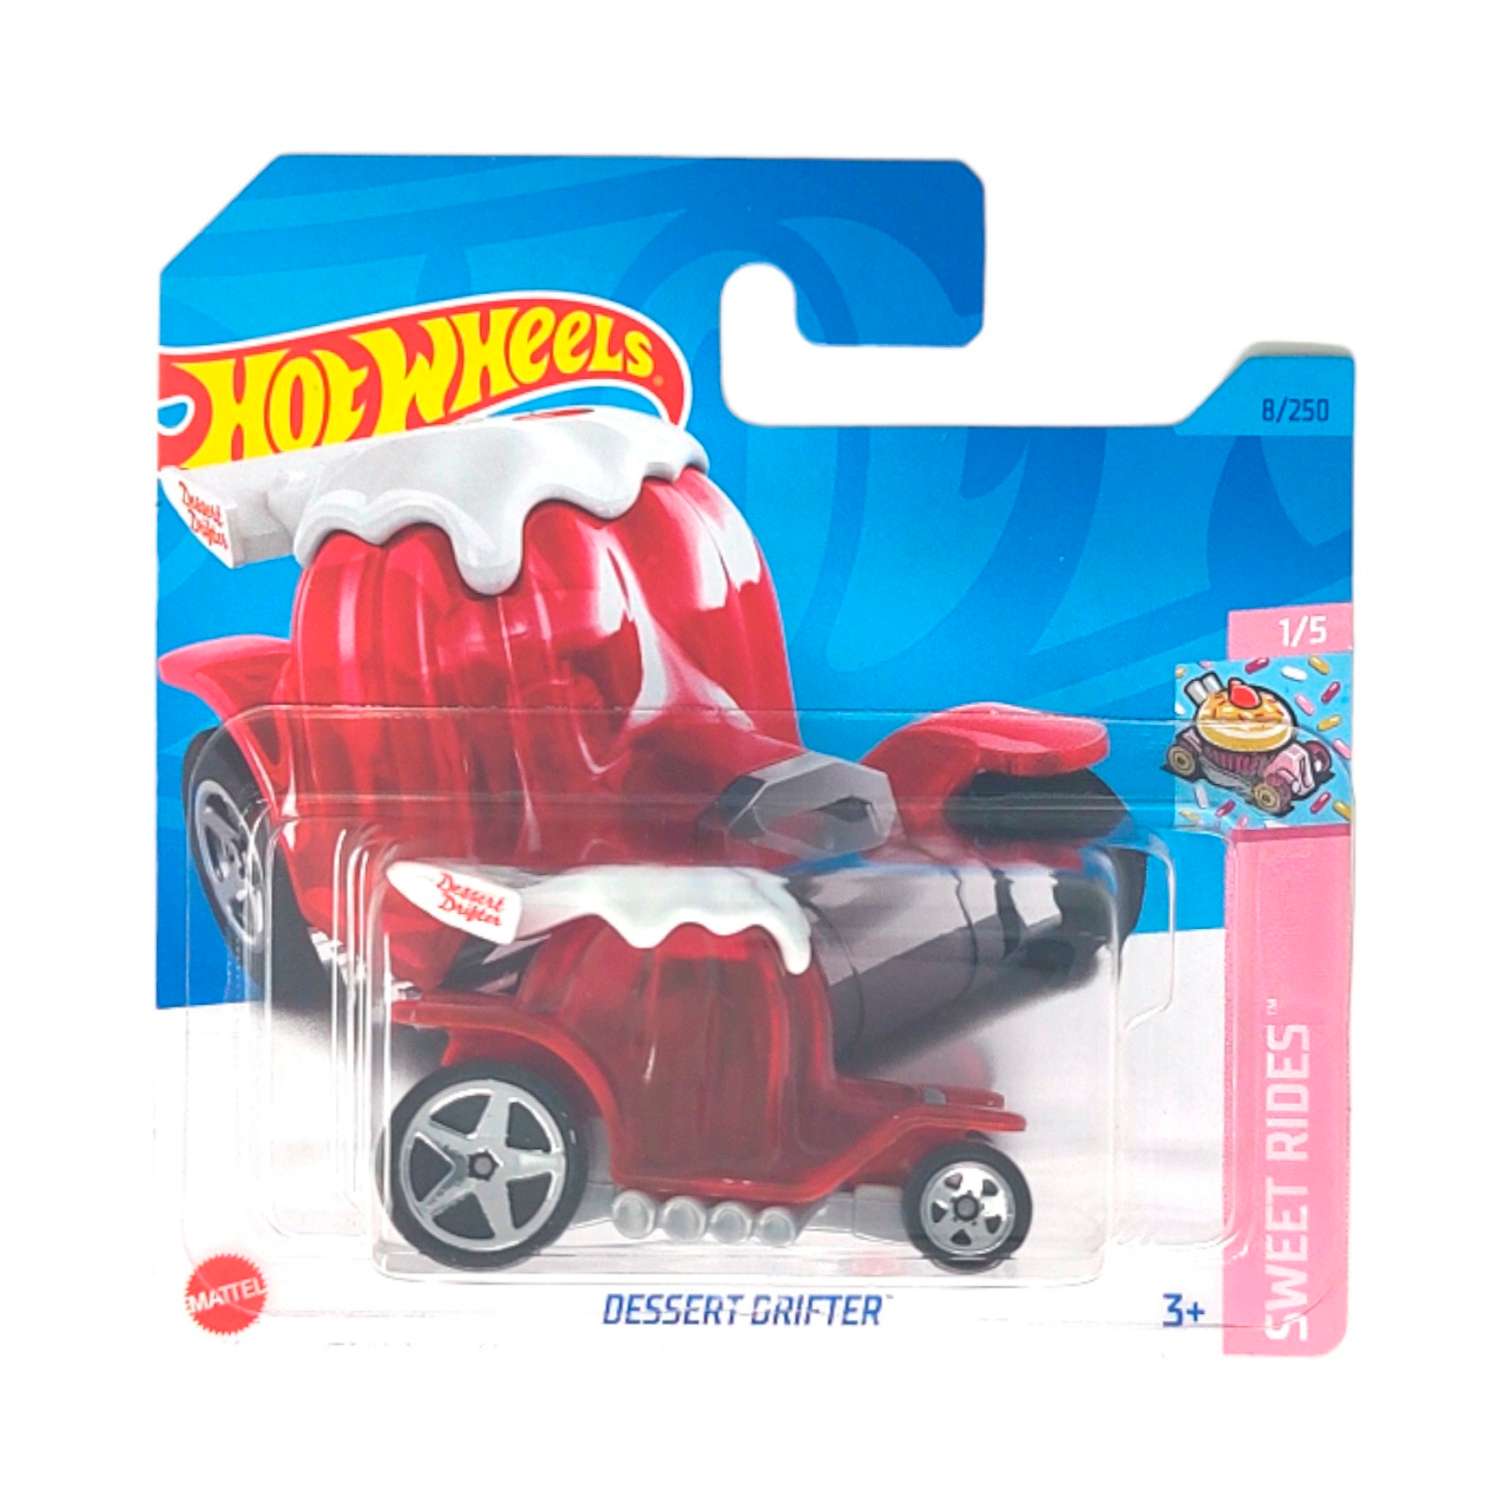 Игрушечная машинка Hot Wheels dessert drifter 5785-A8-HKJ90 - фото 2